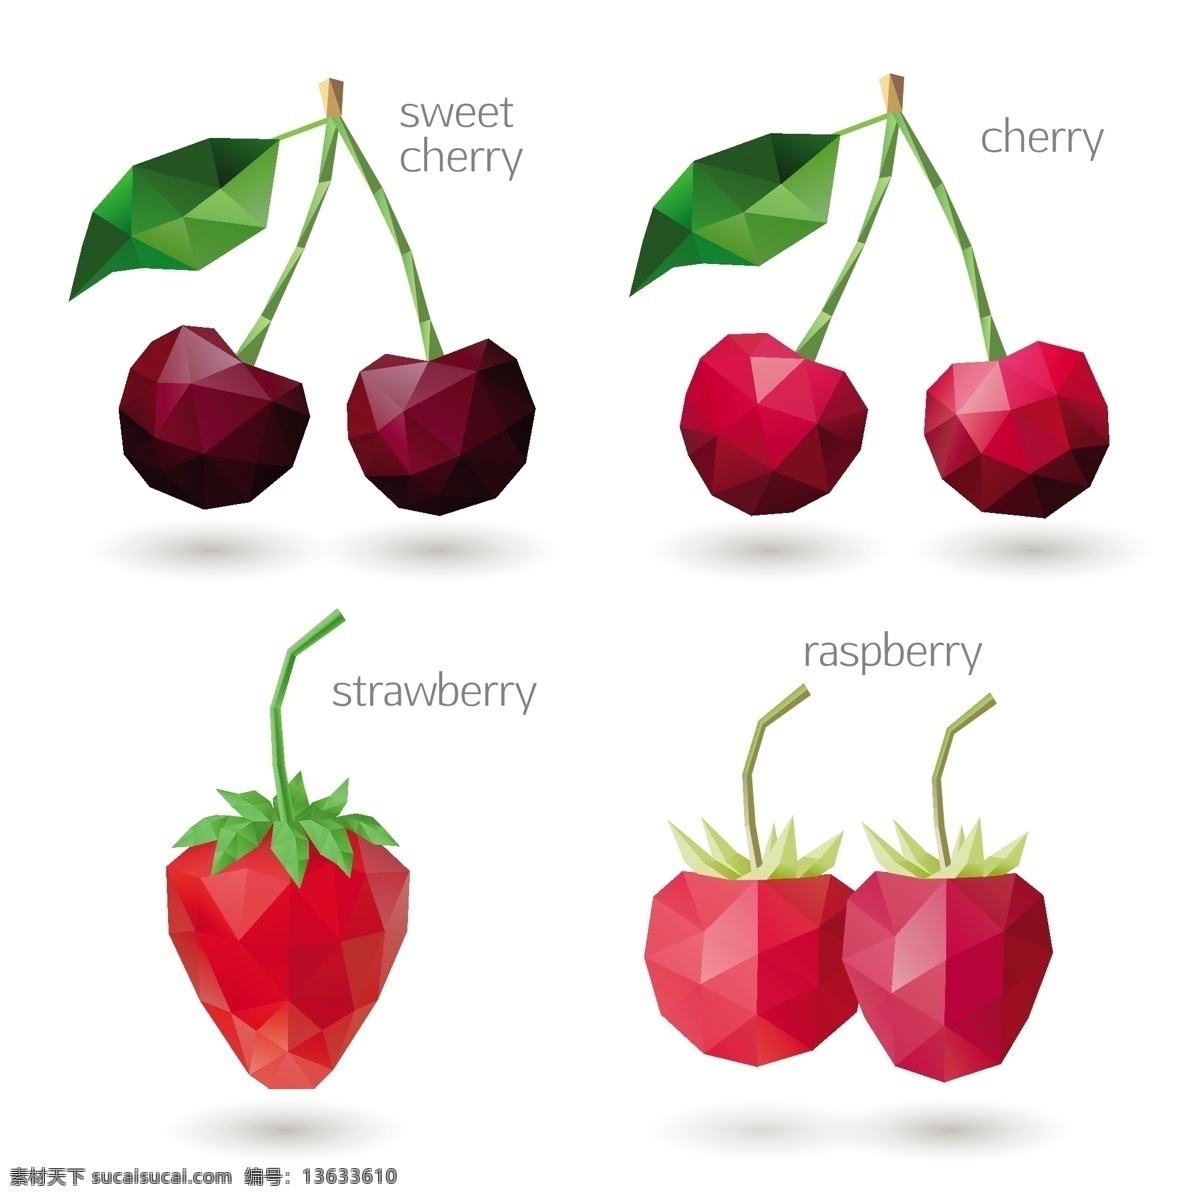 低 款 莓 果 餐饮美食图片 水果 樱桃 欧洲樱桃 草莓 红莓 低面设计水果 低面设计 白色